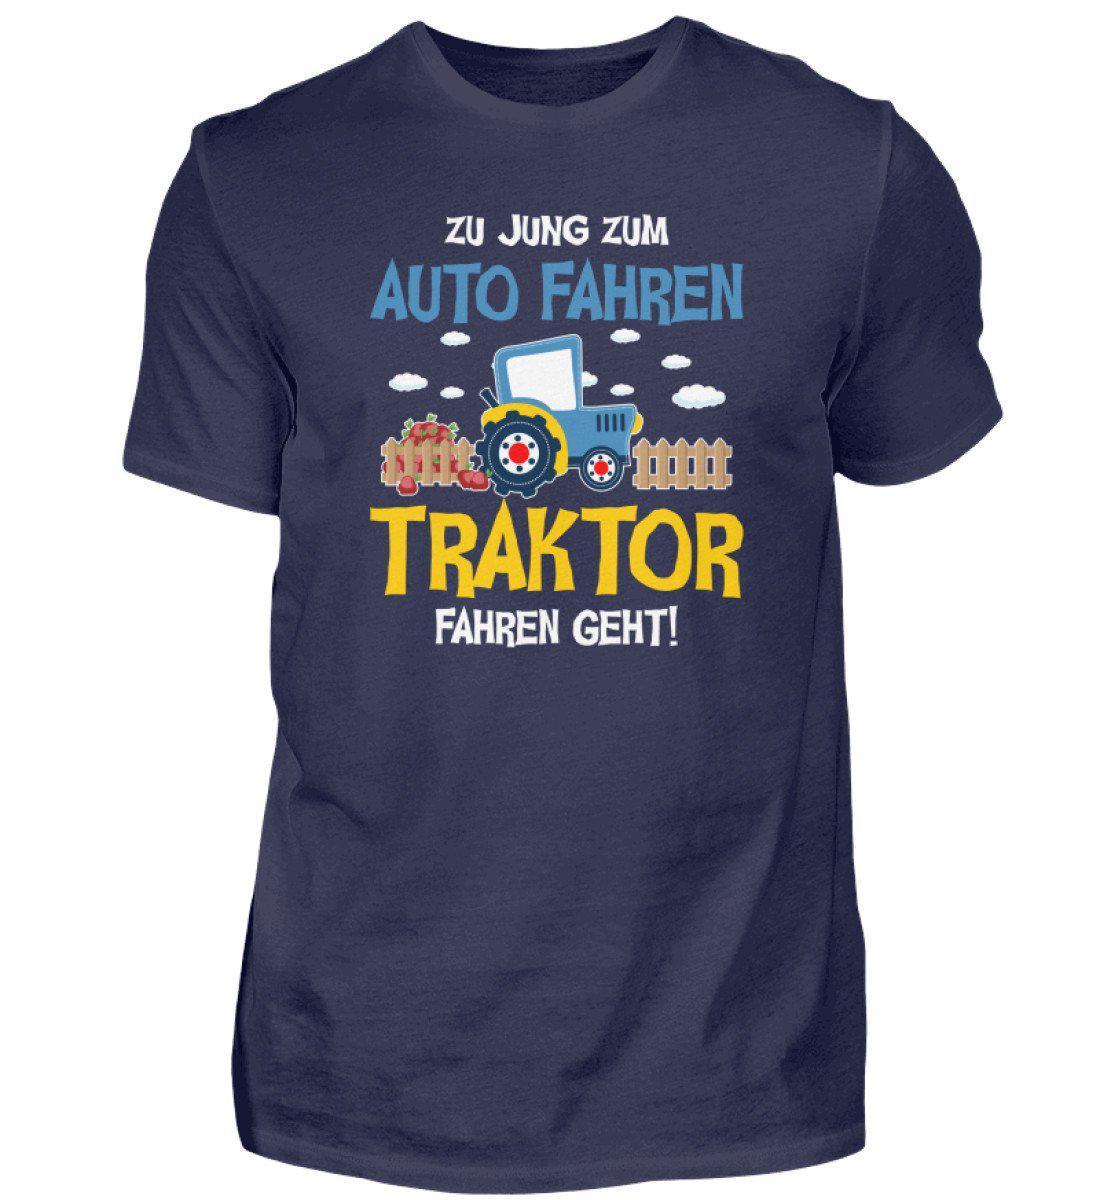 Traktor fahren geht · Herren T-Shirt-Herren Basic T-Shirt-Navy-S-Agrarstarz